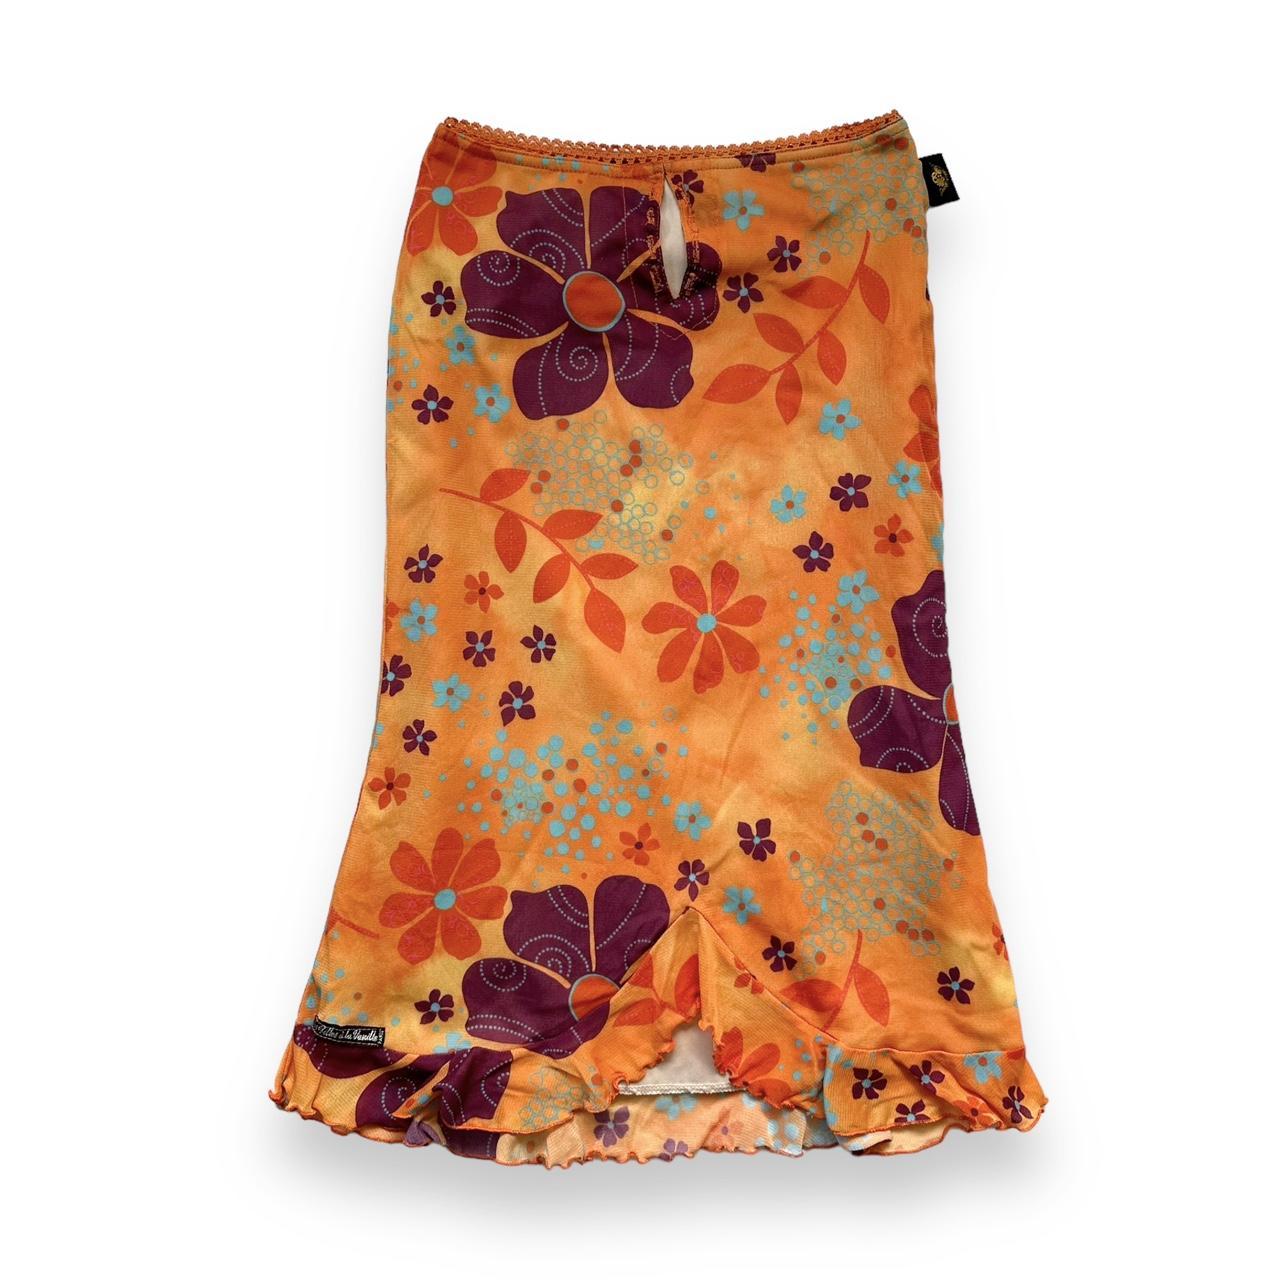 00s mesh skirt made in France by des Filles a la... - Depop